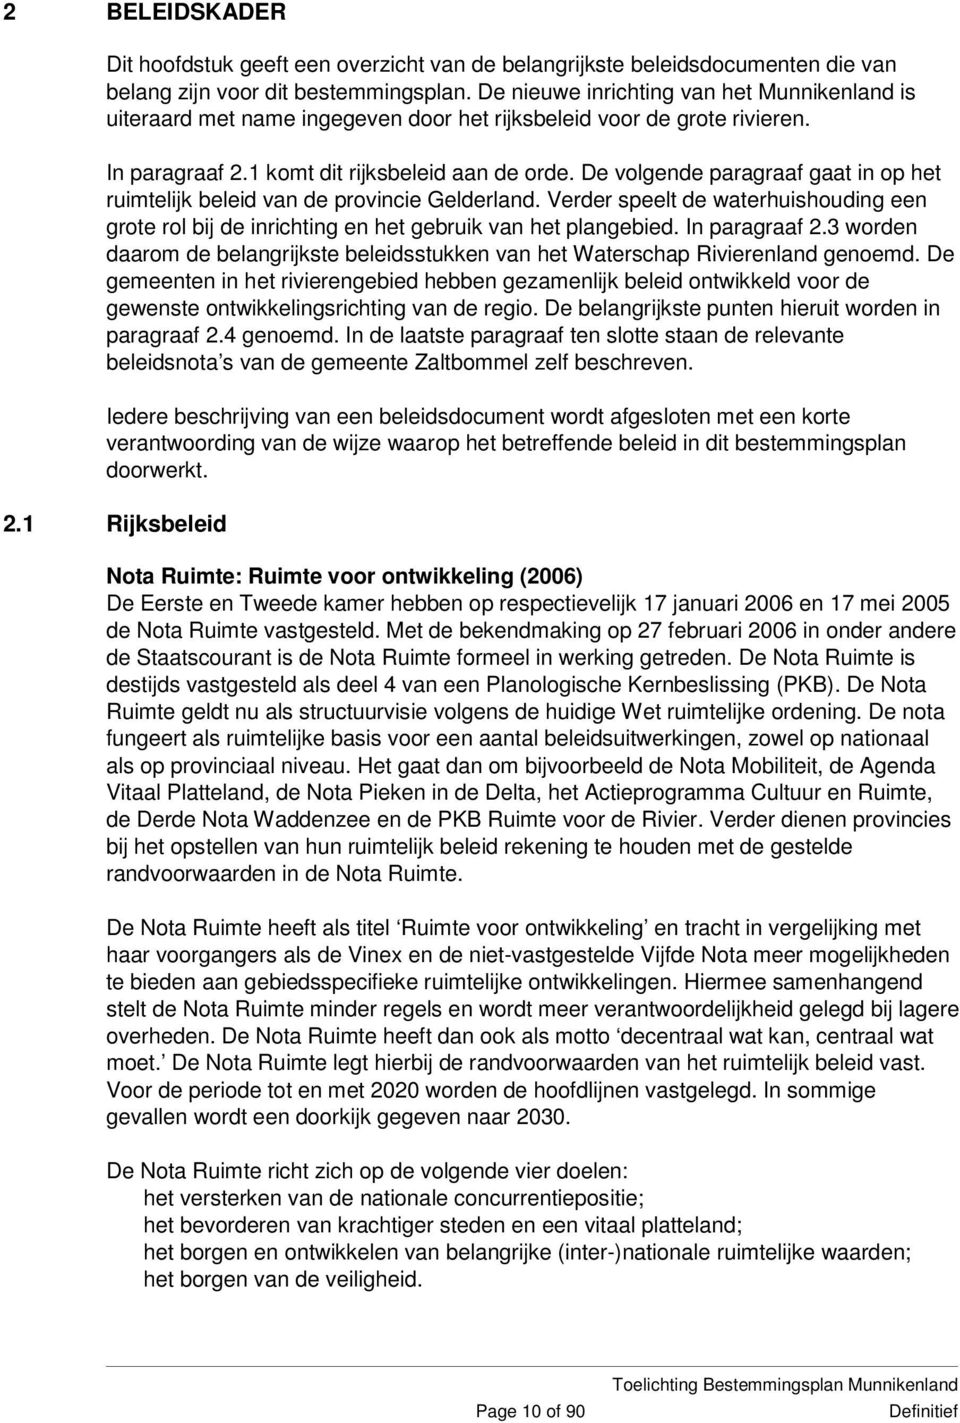 De volgende paragraaf gaat in op het ruimtelijk beleid van de provincie Gelderland. Verder speelt de waterhuishouding een grote rol bij de inrichting en het gebruik van het plangebied. In paragraaf 2.